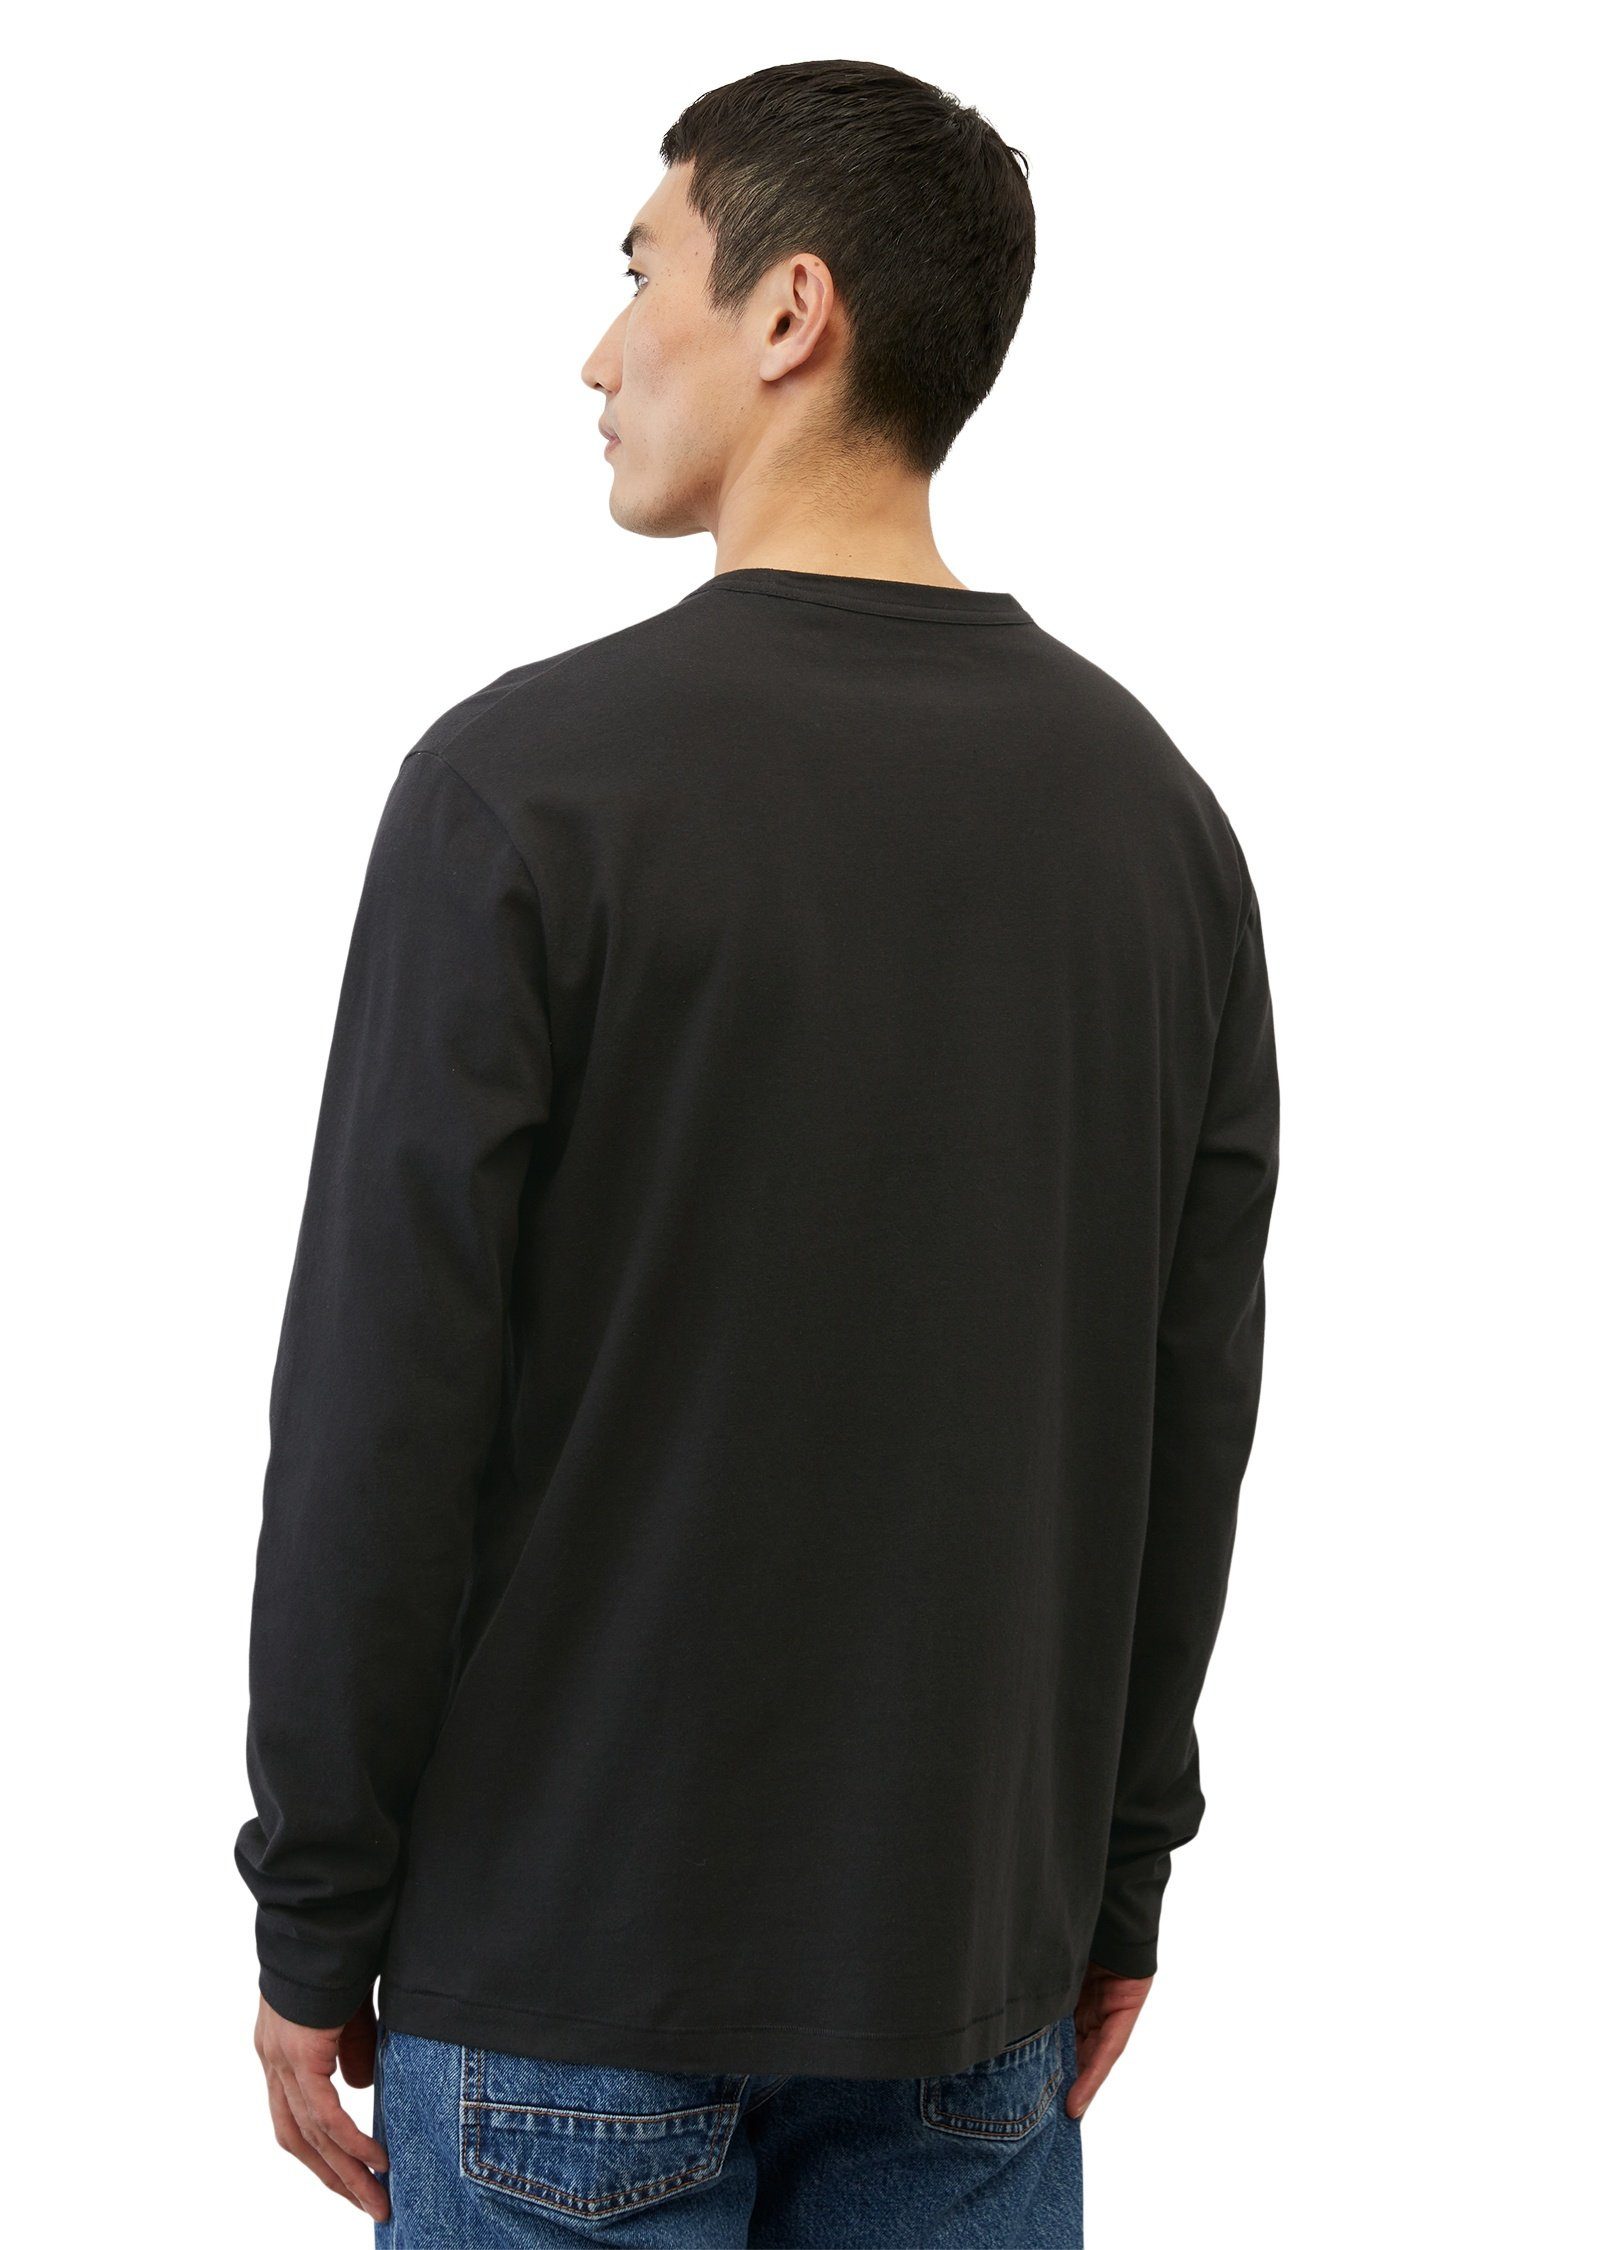 Jersey-Qualität aus mittleschwerer Marc O'Polo schwarz Langarmshirt